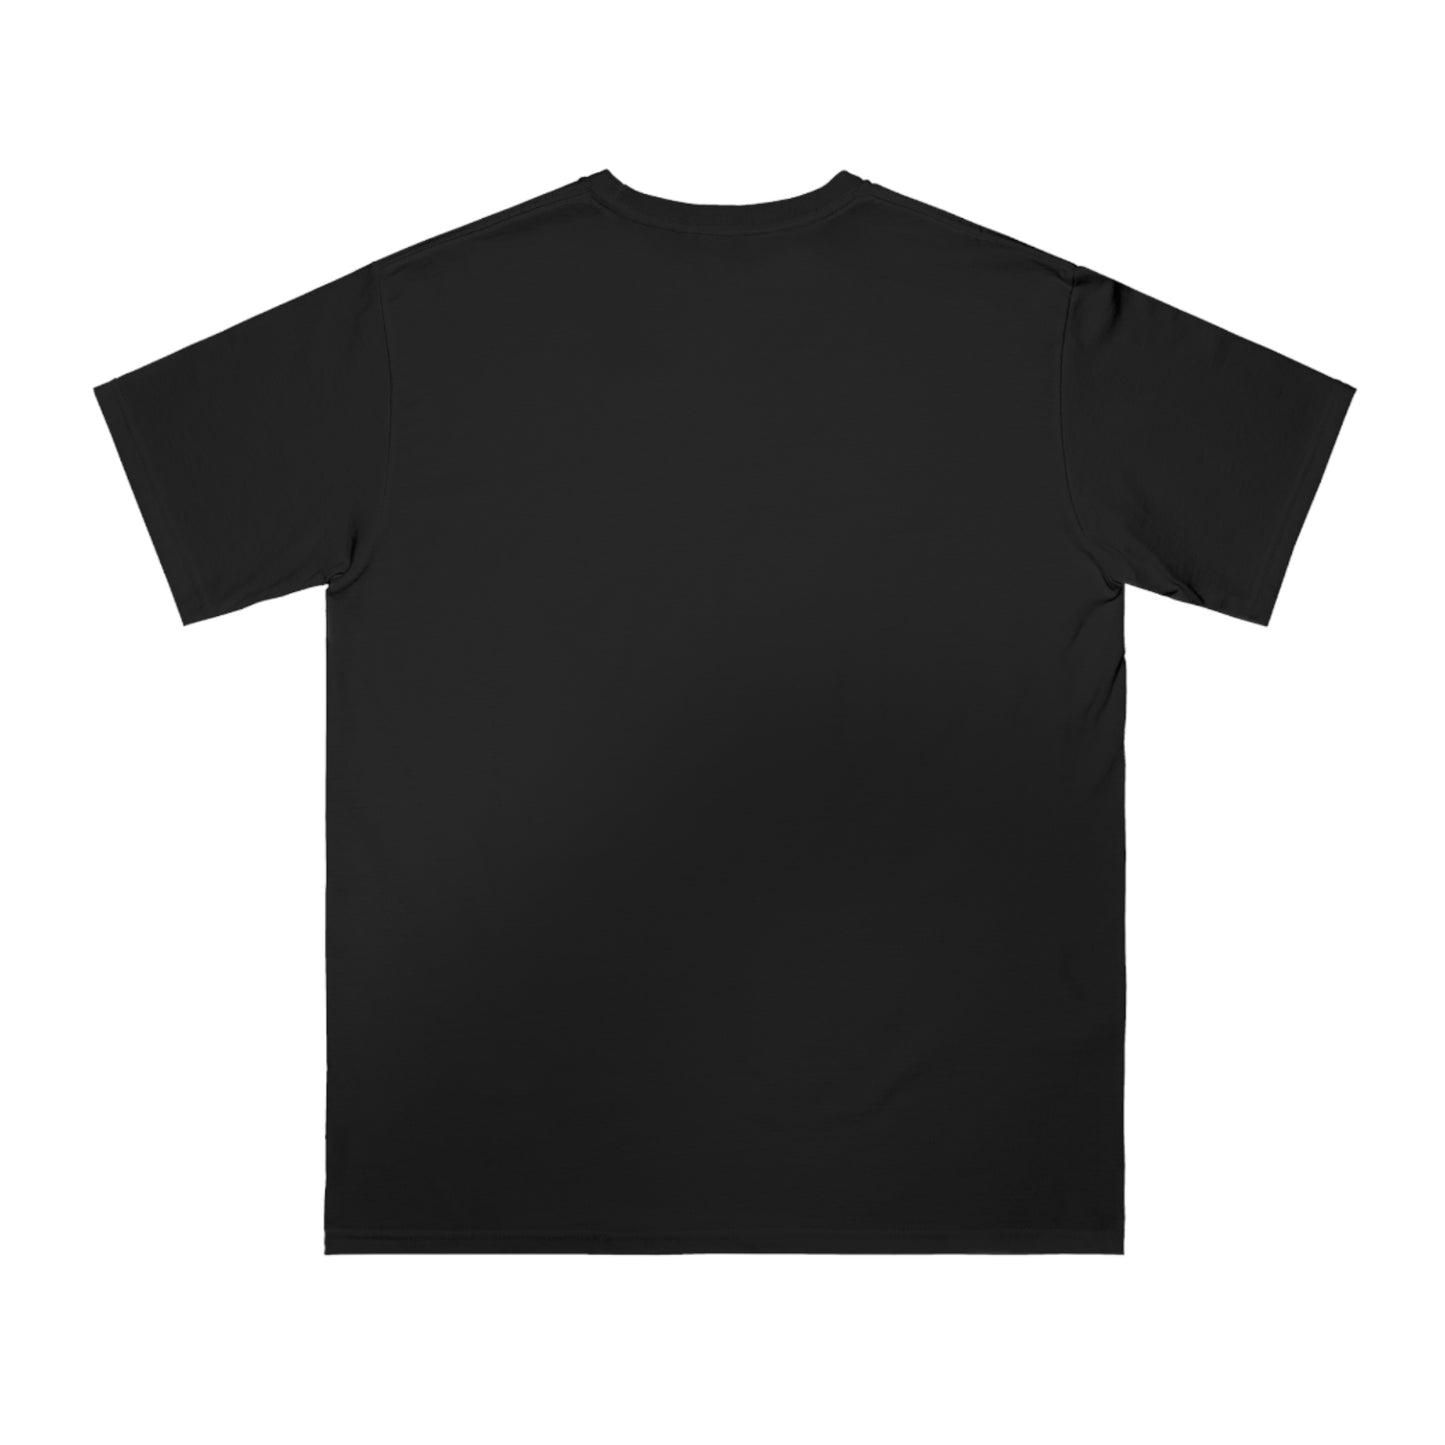 Shop Now Organic Unisex Classic T-Shirt | WomenNtech